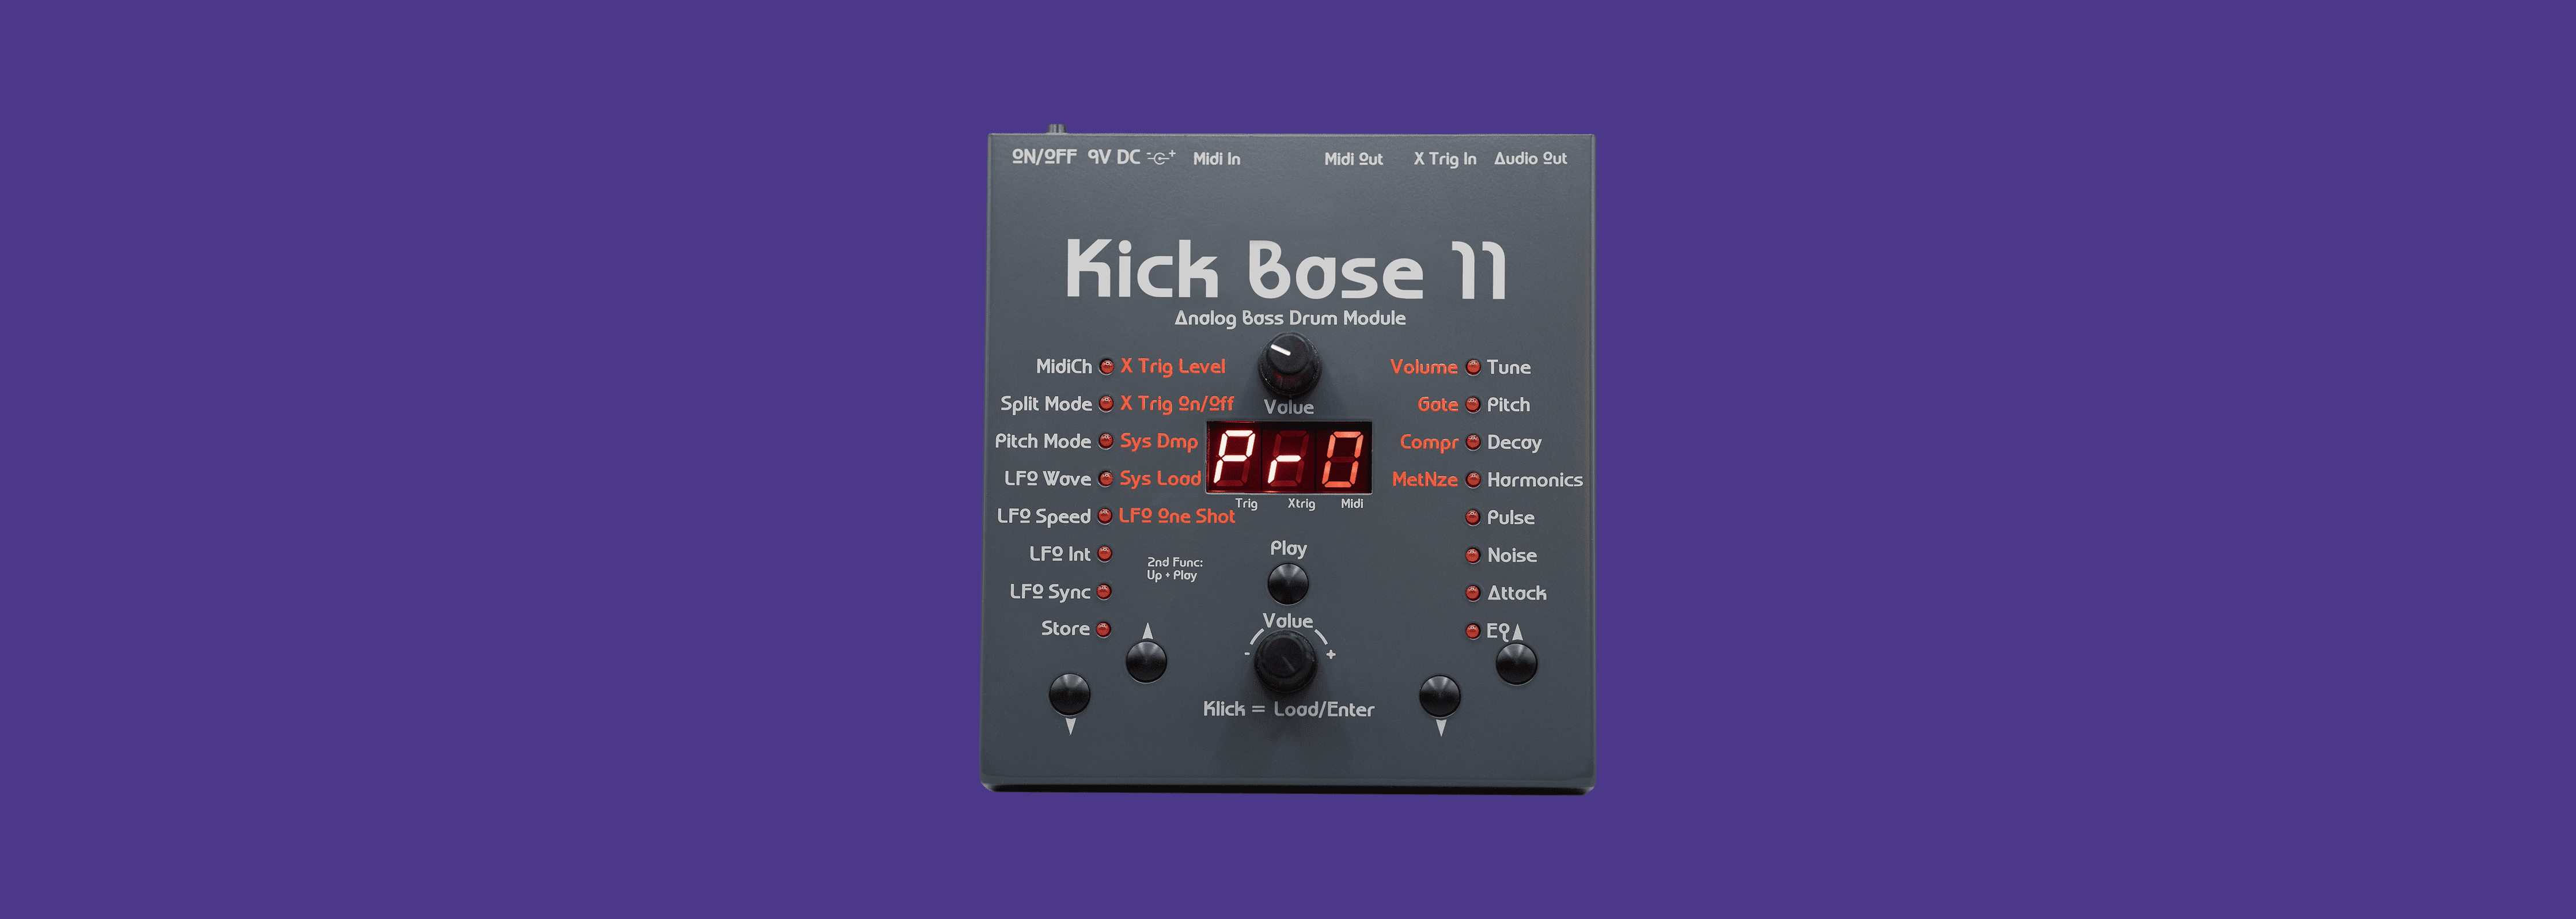 Kick Base 11